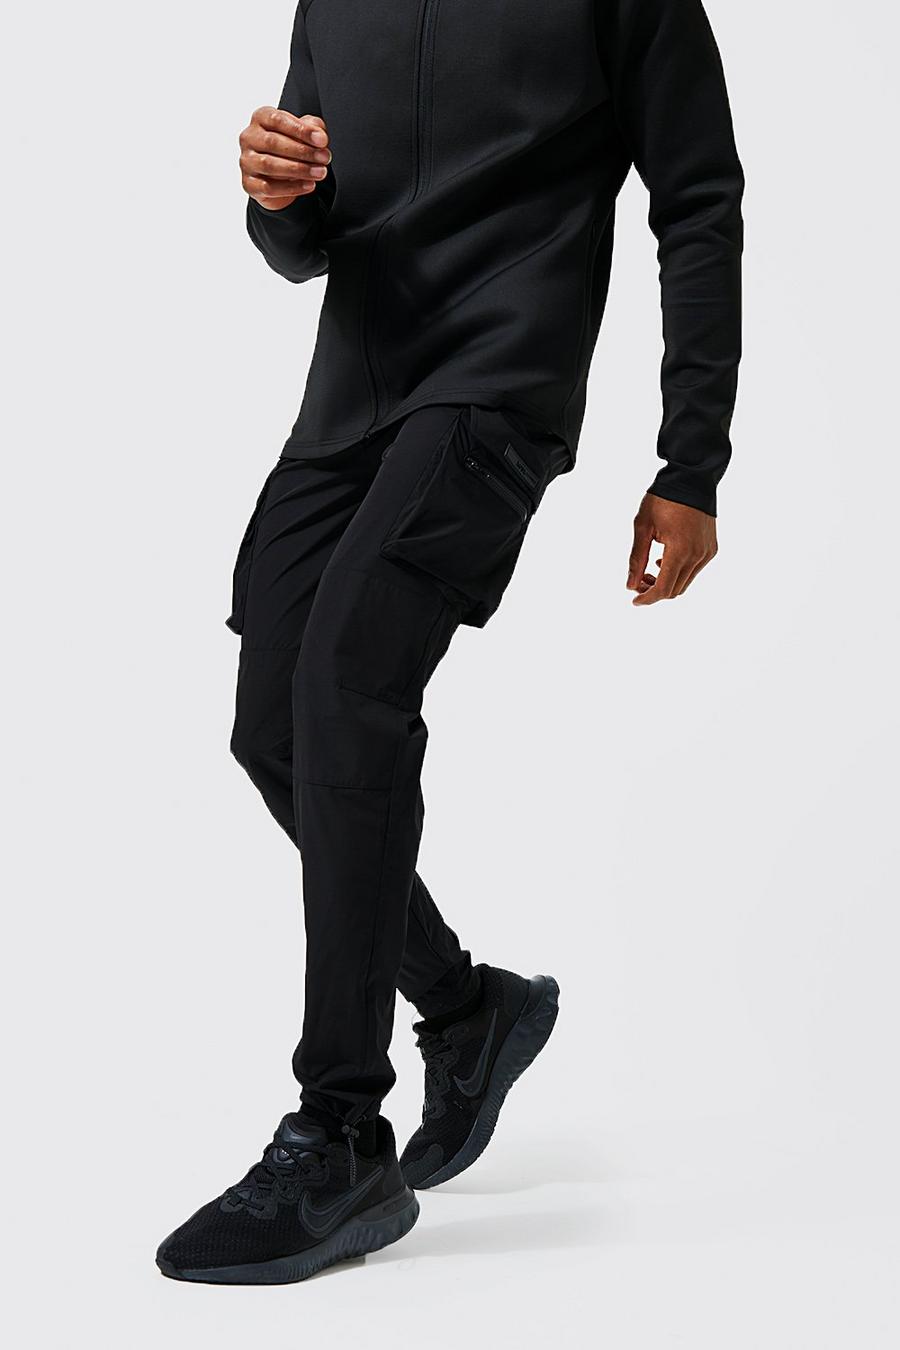 Black negro מכנסי ריצה דגמ'ח ספורטיביים קלילים עם כיתוב Man